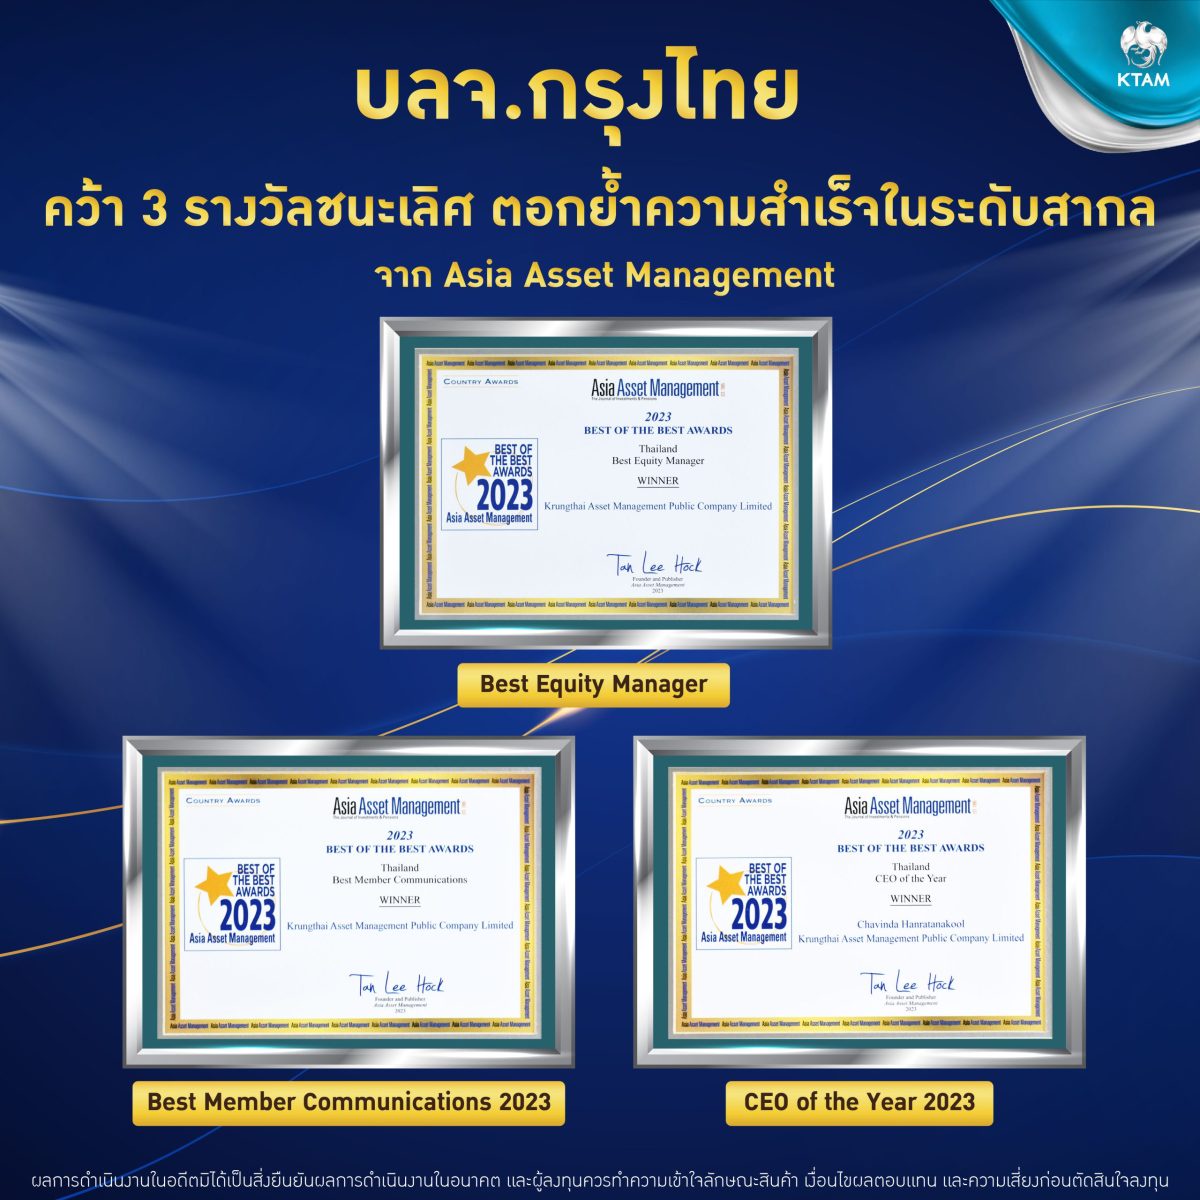 KTAM ตอกย้ำความสำเร็จ คว้า 3 รางวัลชนะเลิศจากนิตยสาร Asia Asset Management